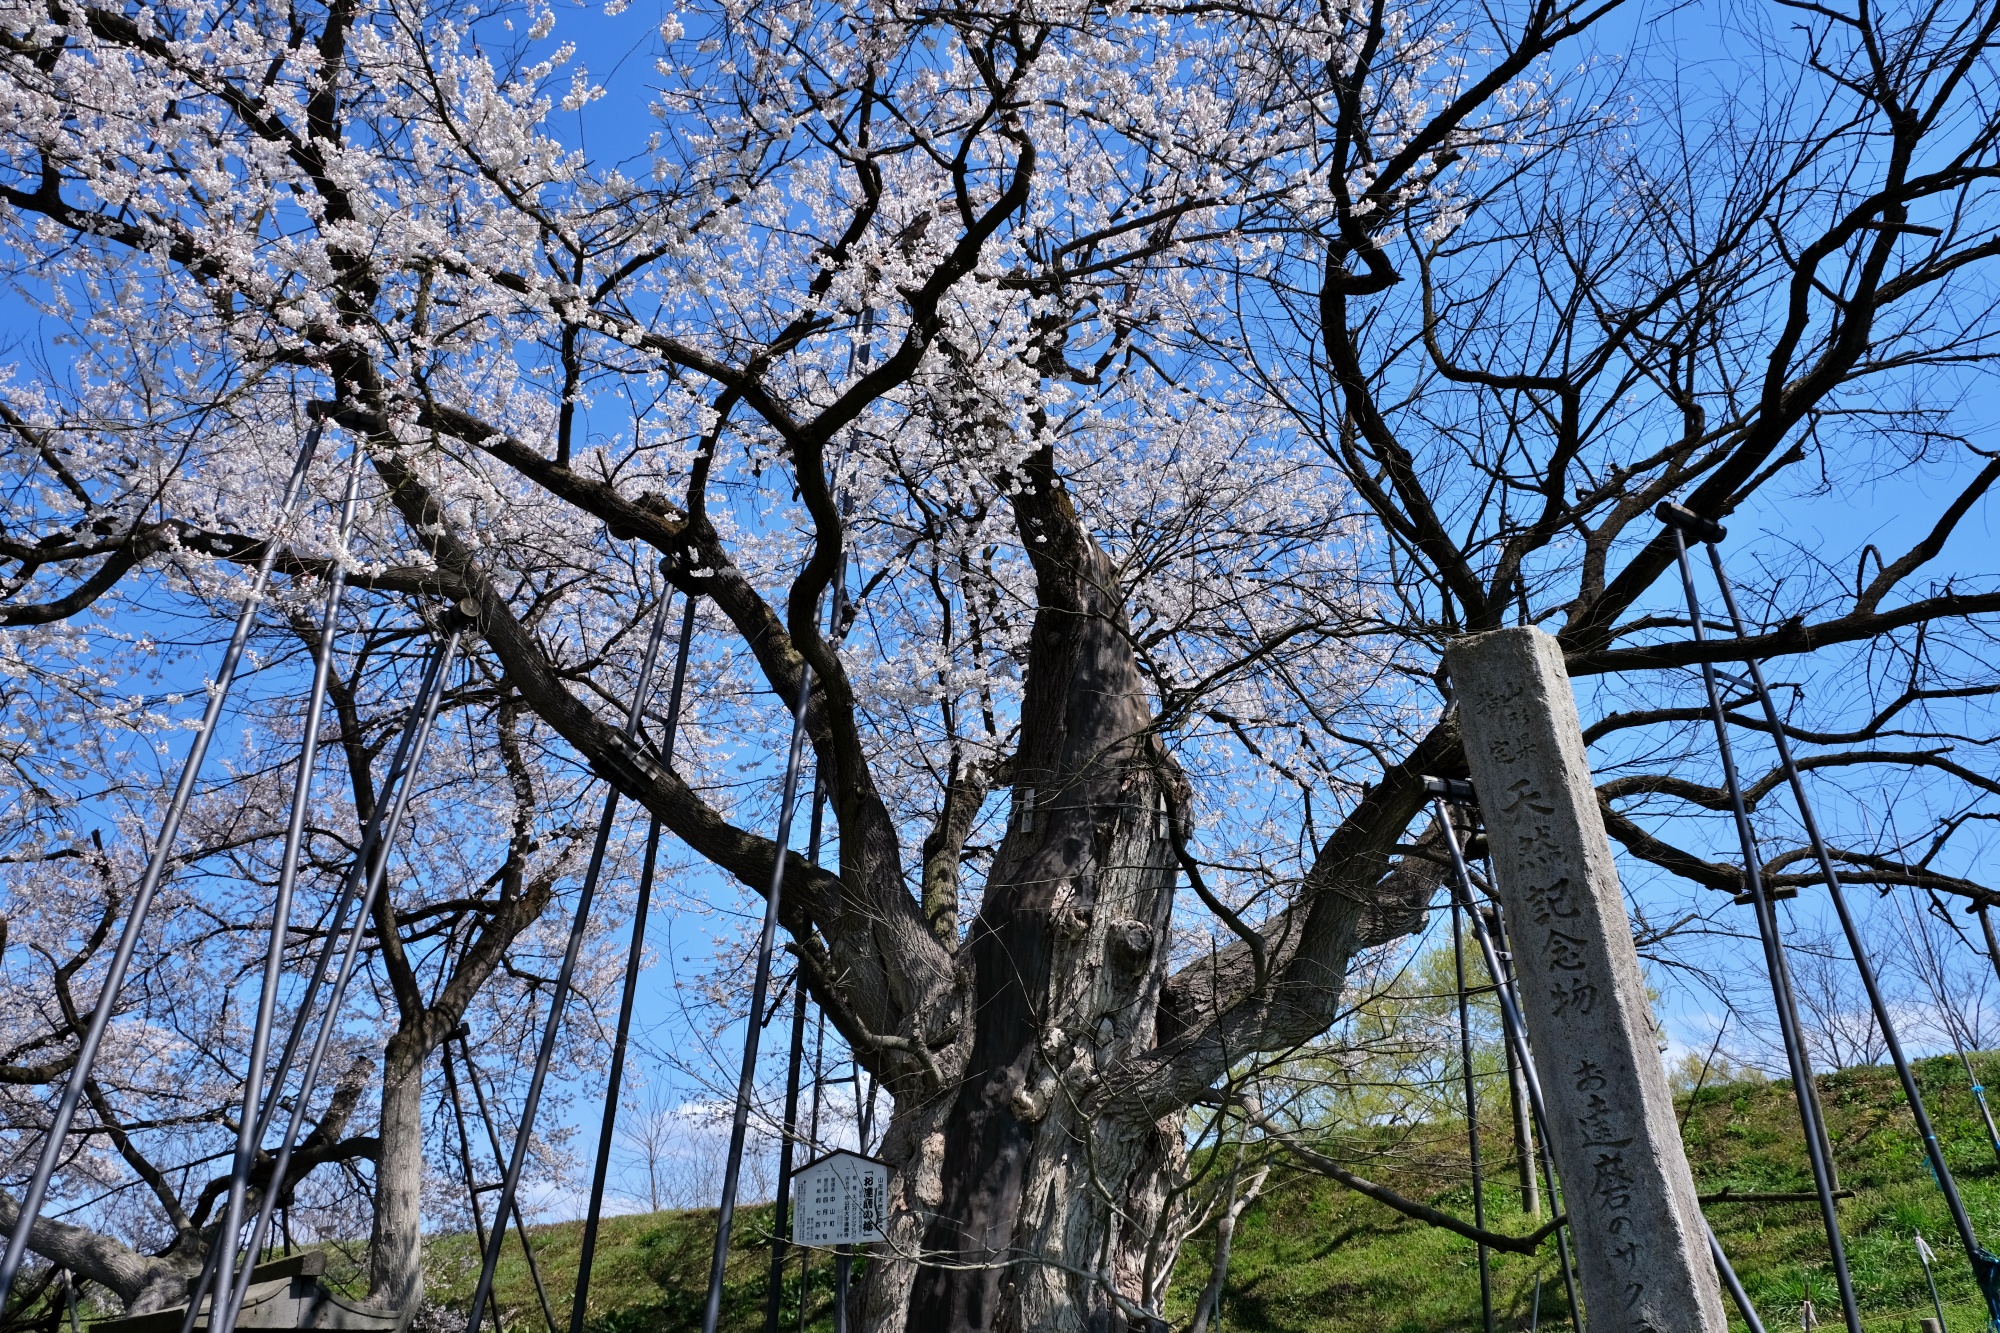 お達磨の桜公園